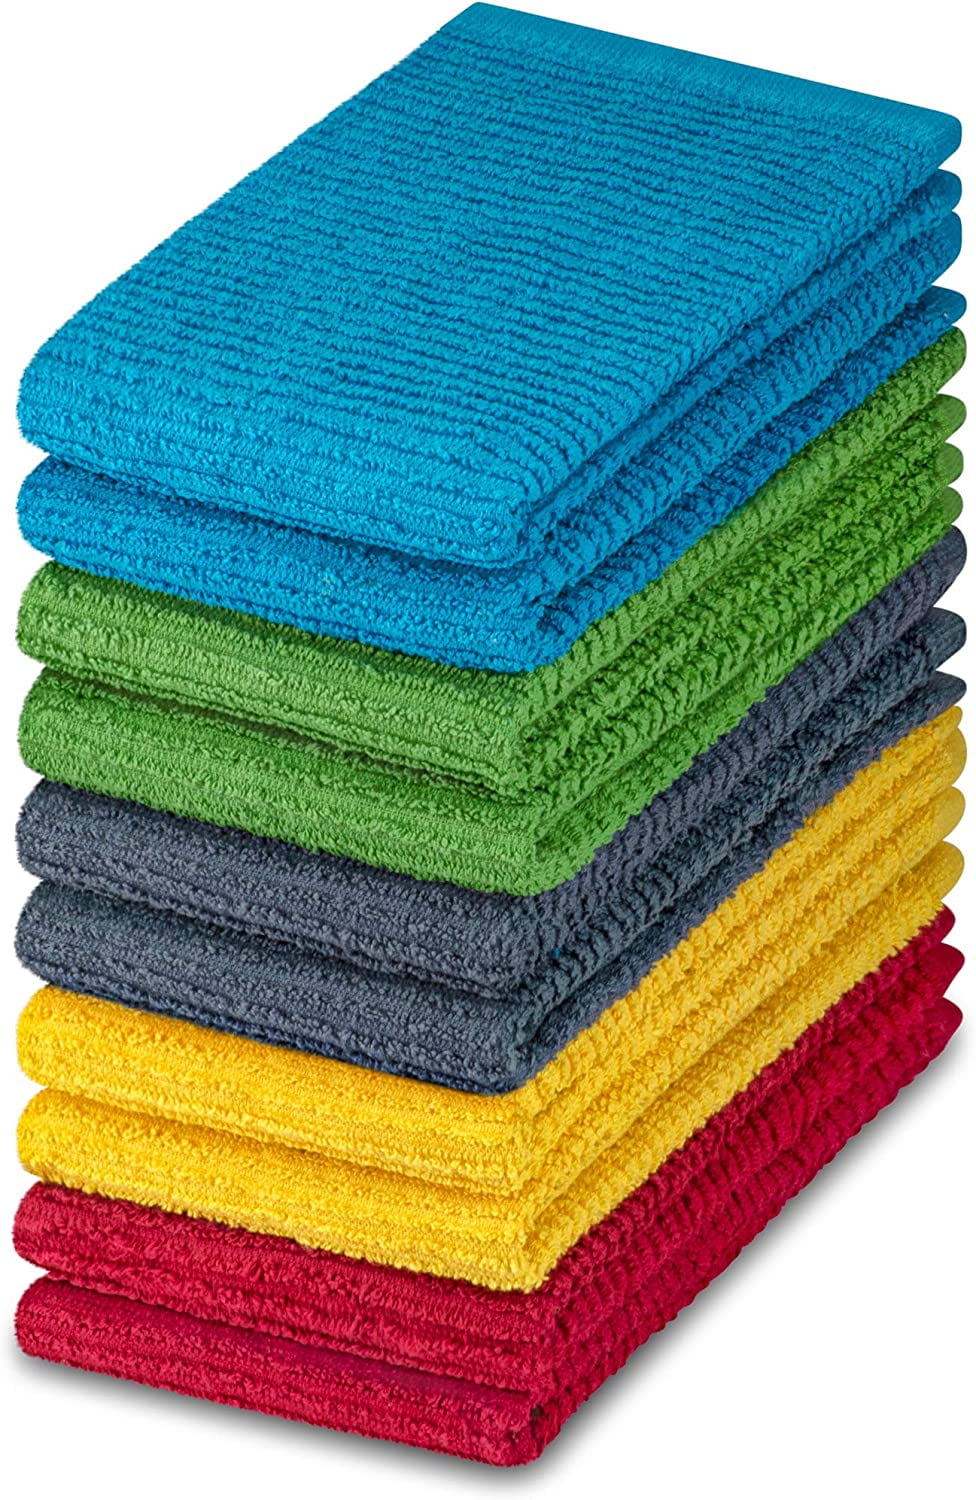 Soft Textiles 24 Pack White Bar Mop Kitchen Towels 100% Cotton